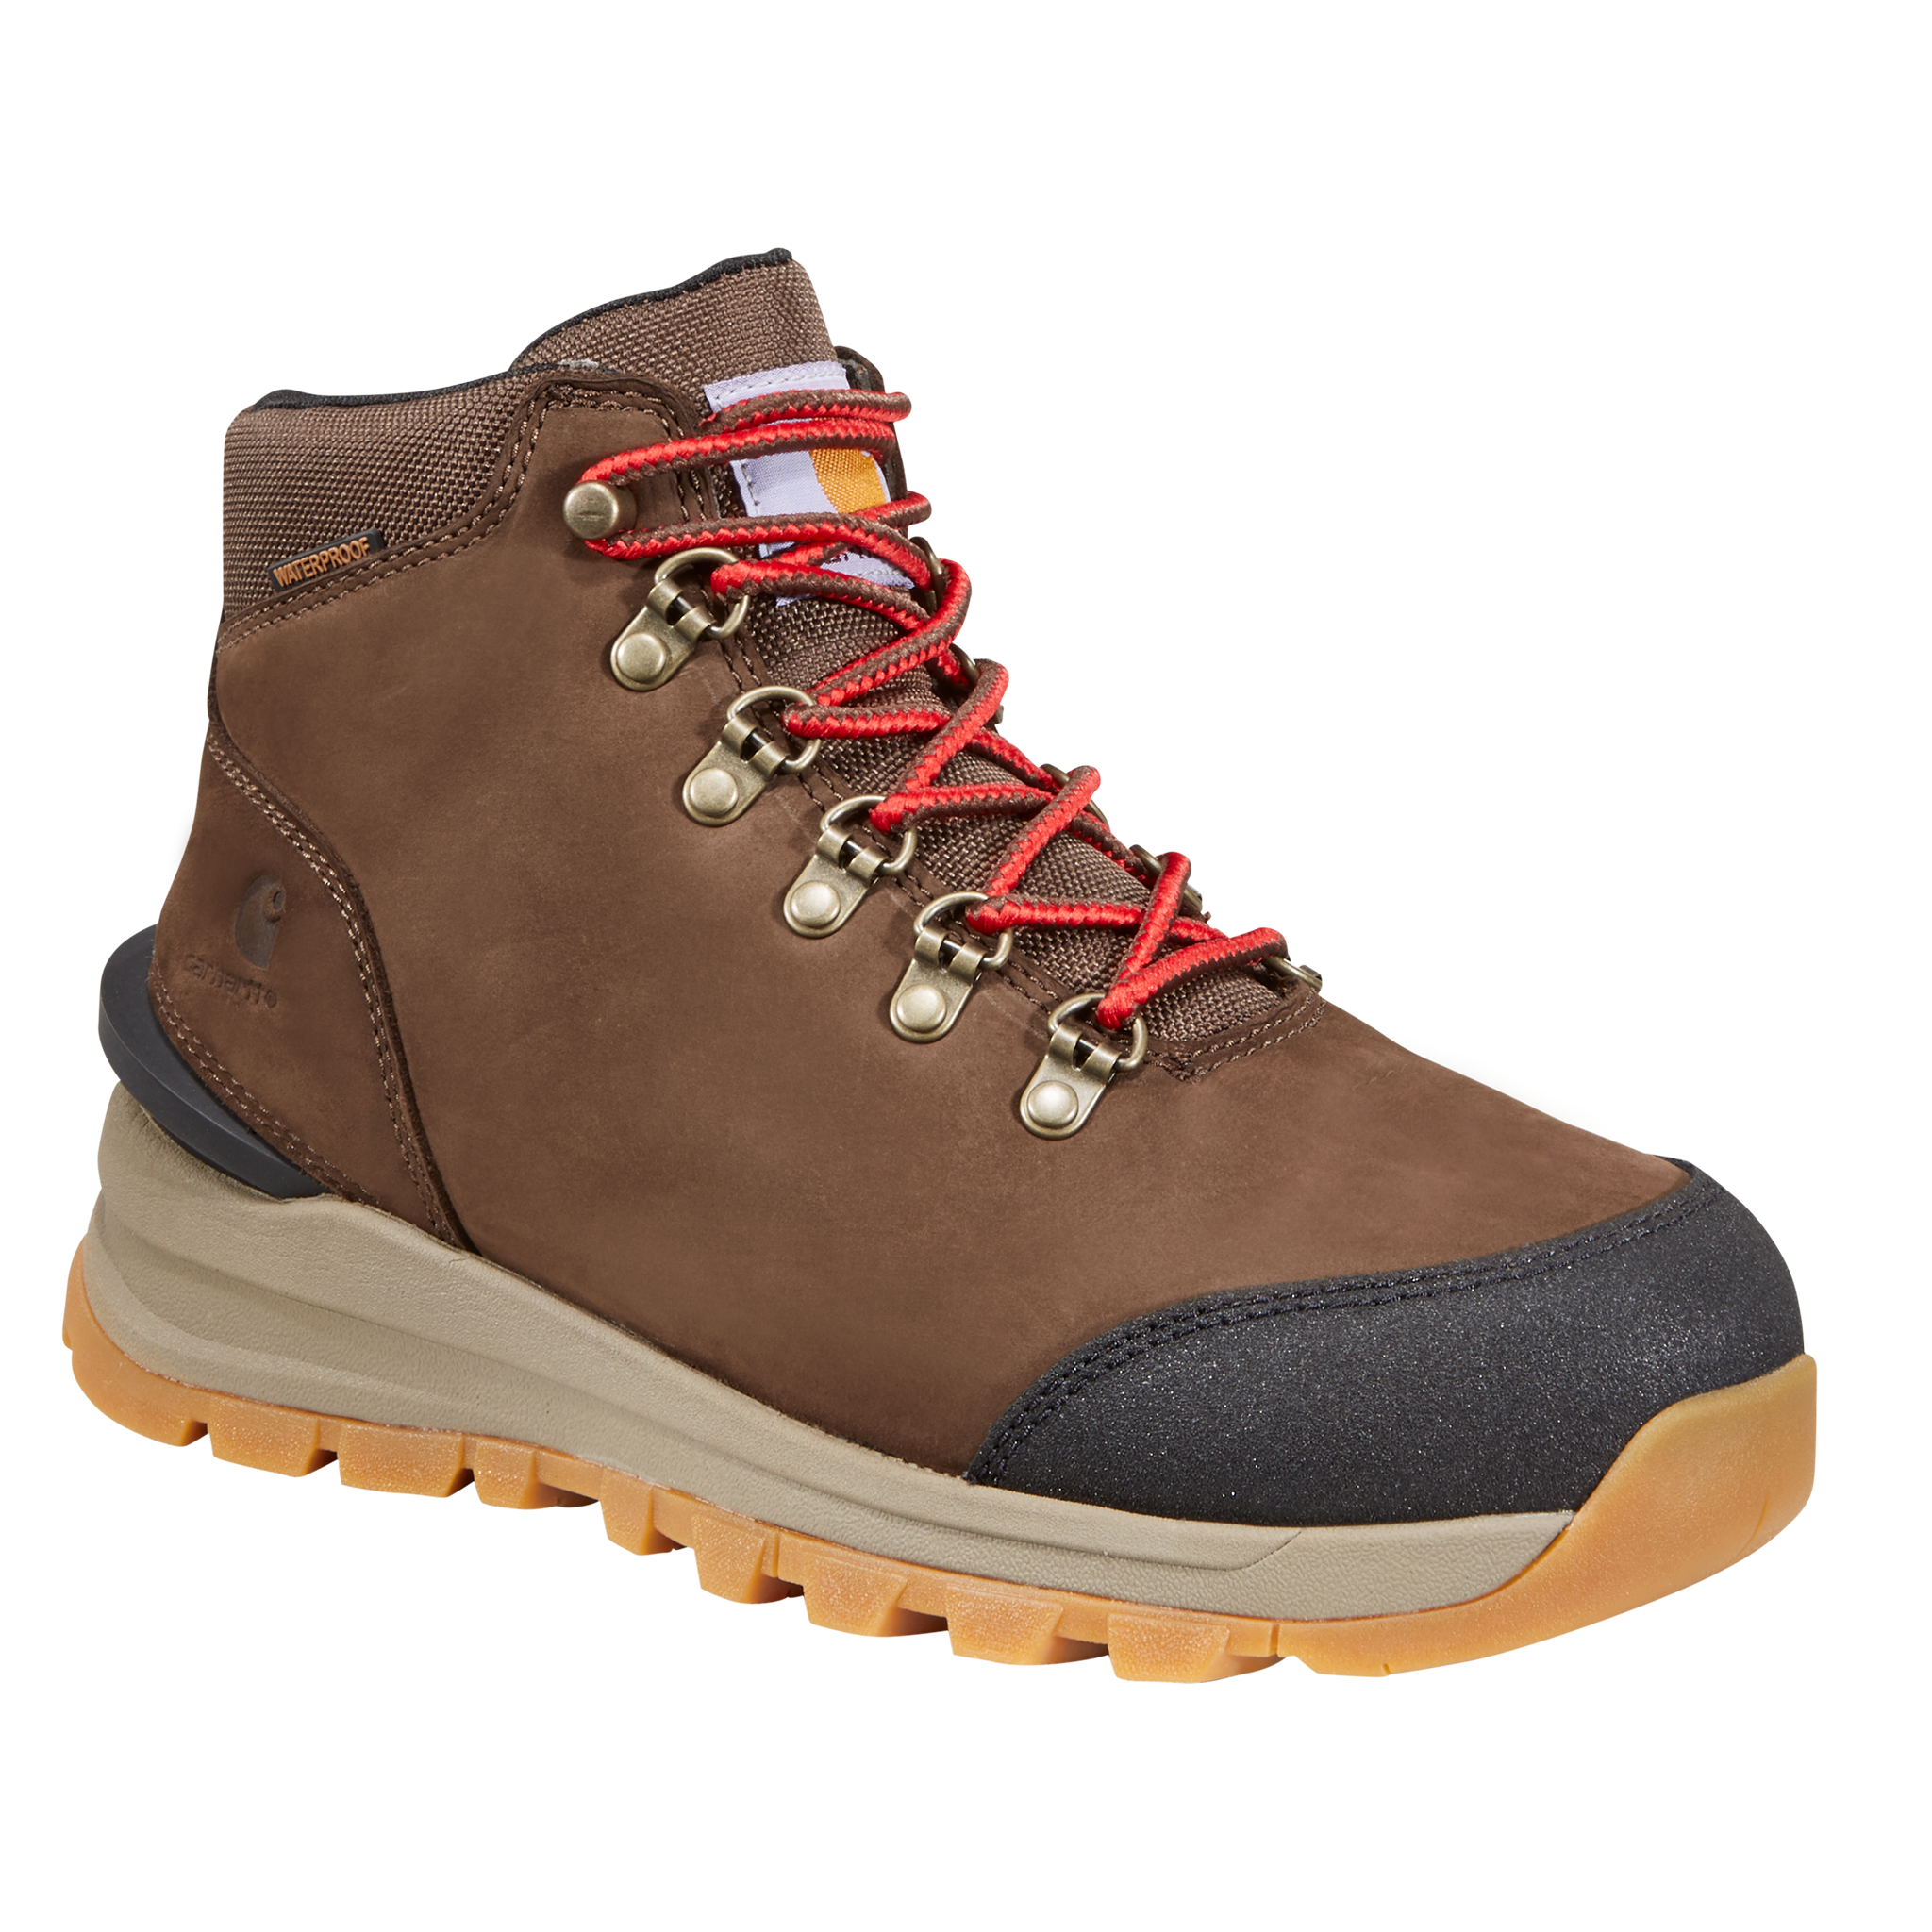 Carhartt Gilmore Waterproof Hiking Boots for Ladies - Dark Brown Nubuck - 10M